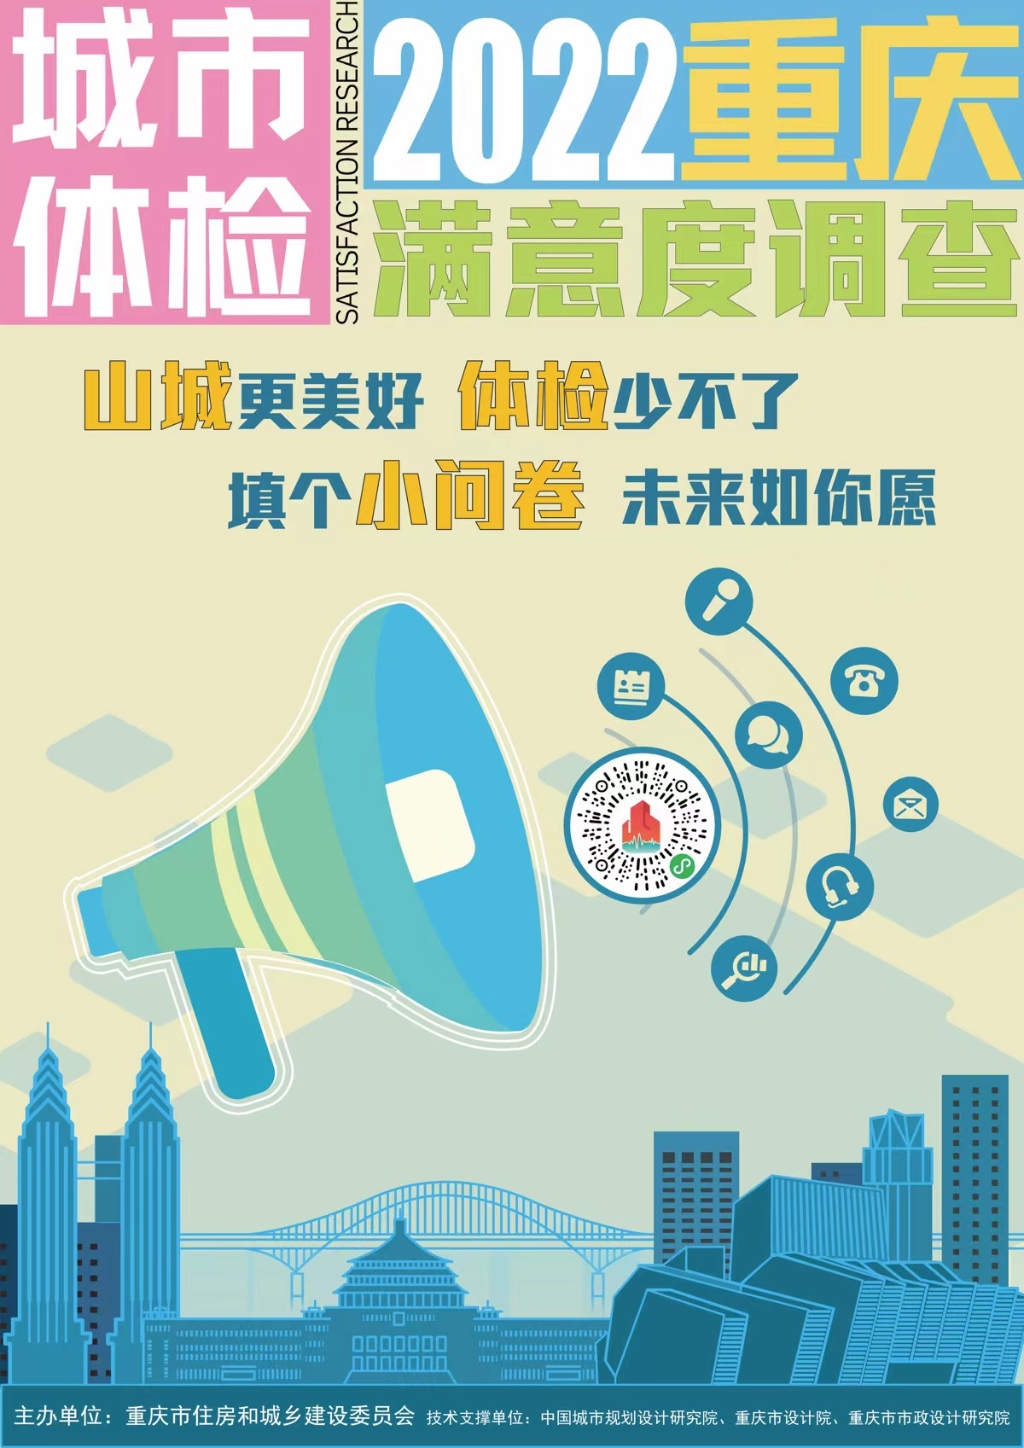 扫描二维码，即可参与重庆城市体检满意度调查。市住房城乡建委供图